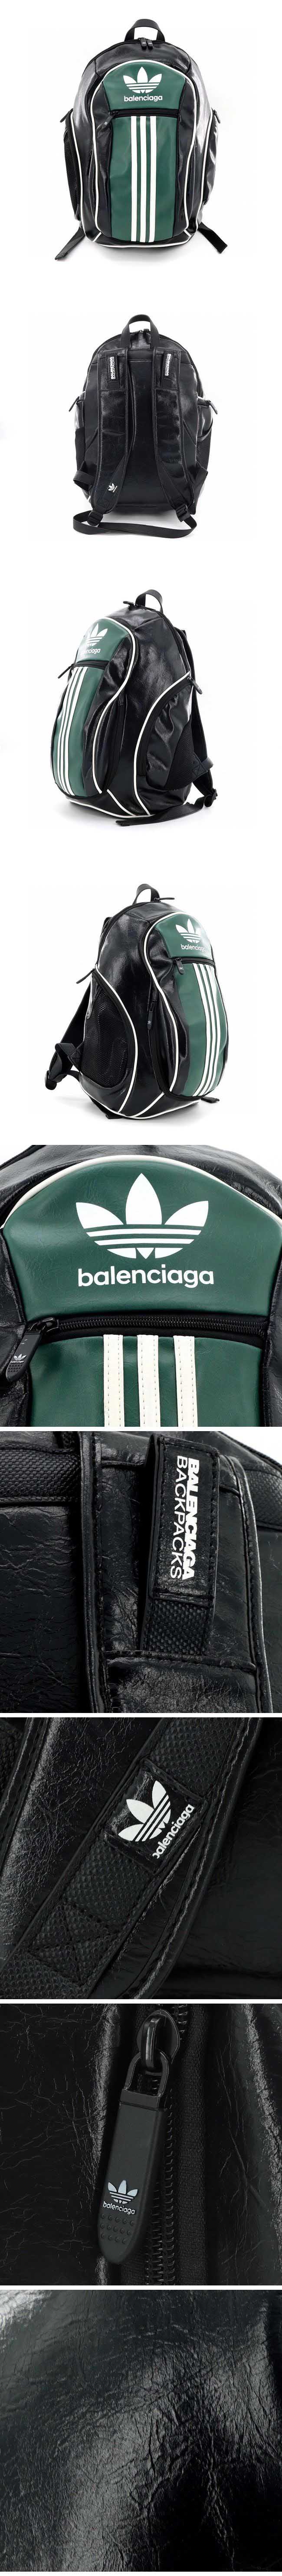 Balenciaga x Adidas Small Backpack Black/Green バレンシアガ x アディダス スモール バックパック ブラック/グリーン